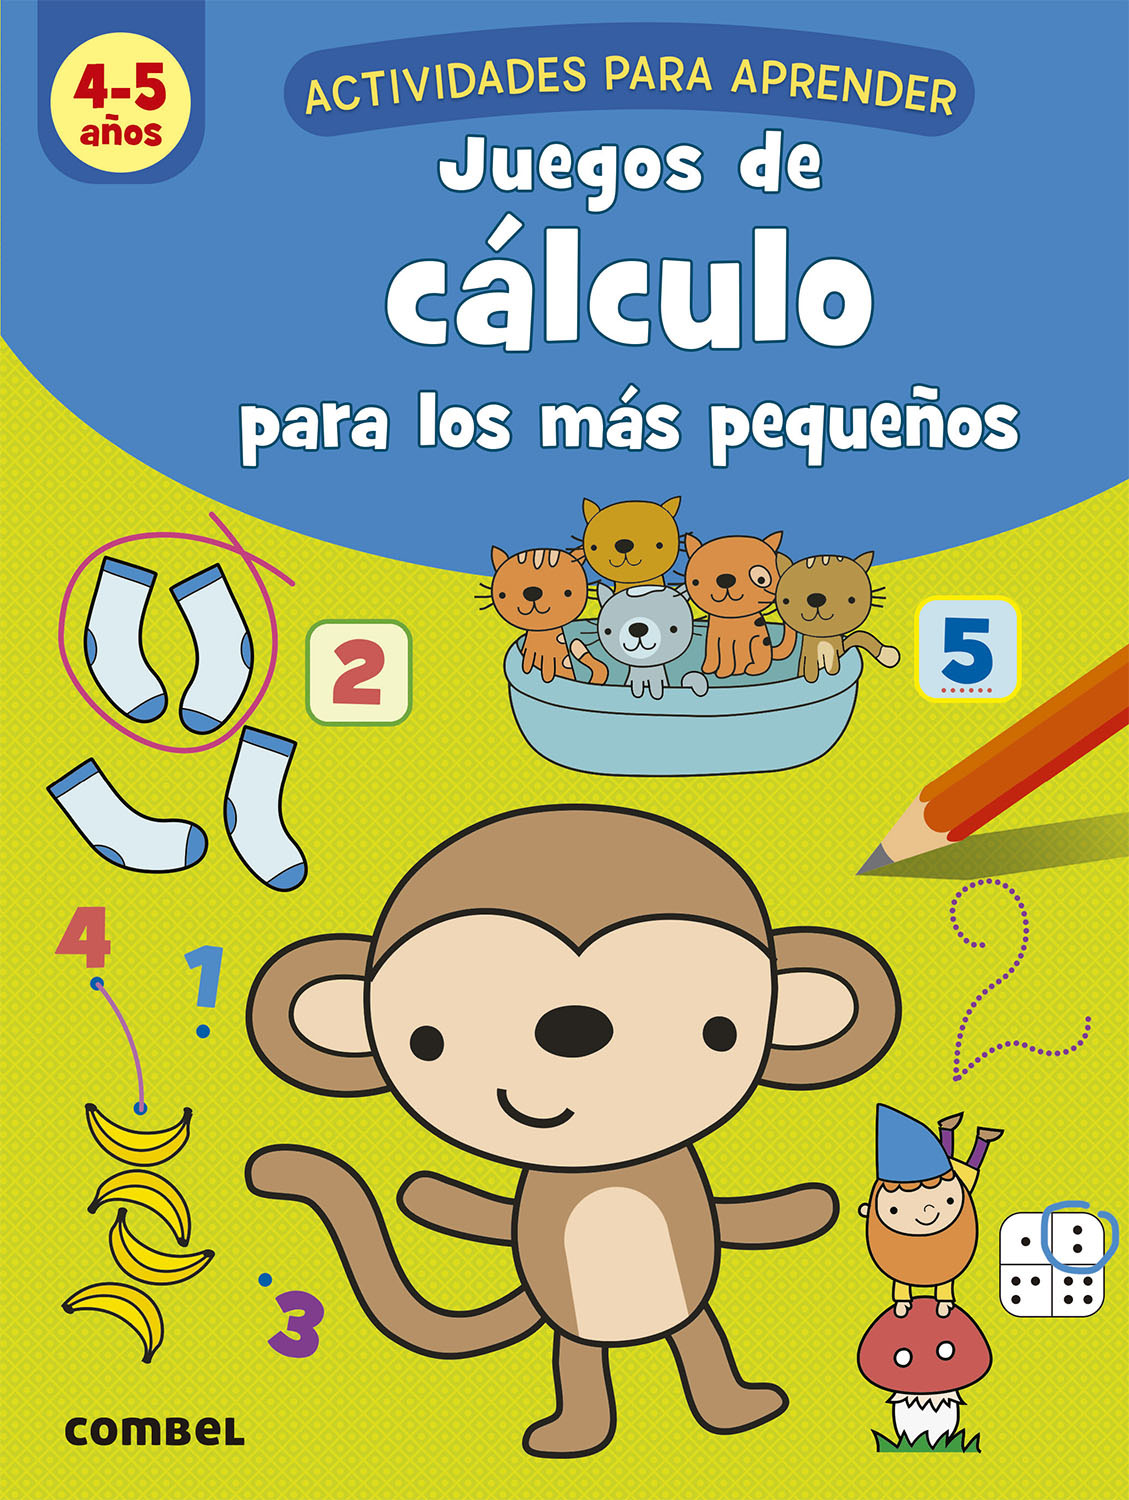 Juegos de cálculo para los más pequeños (4-5 años): Combel Editorial